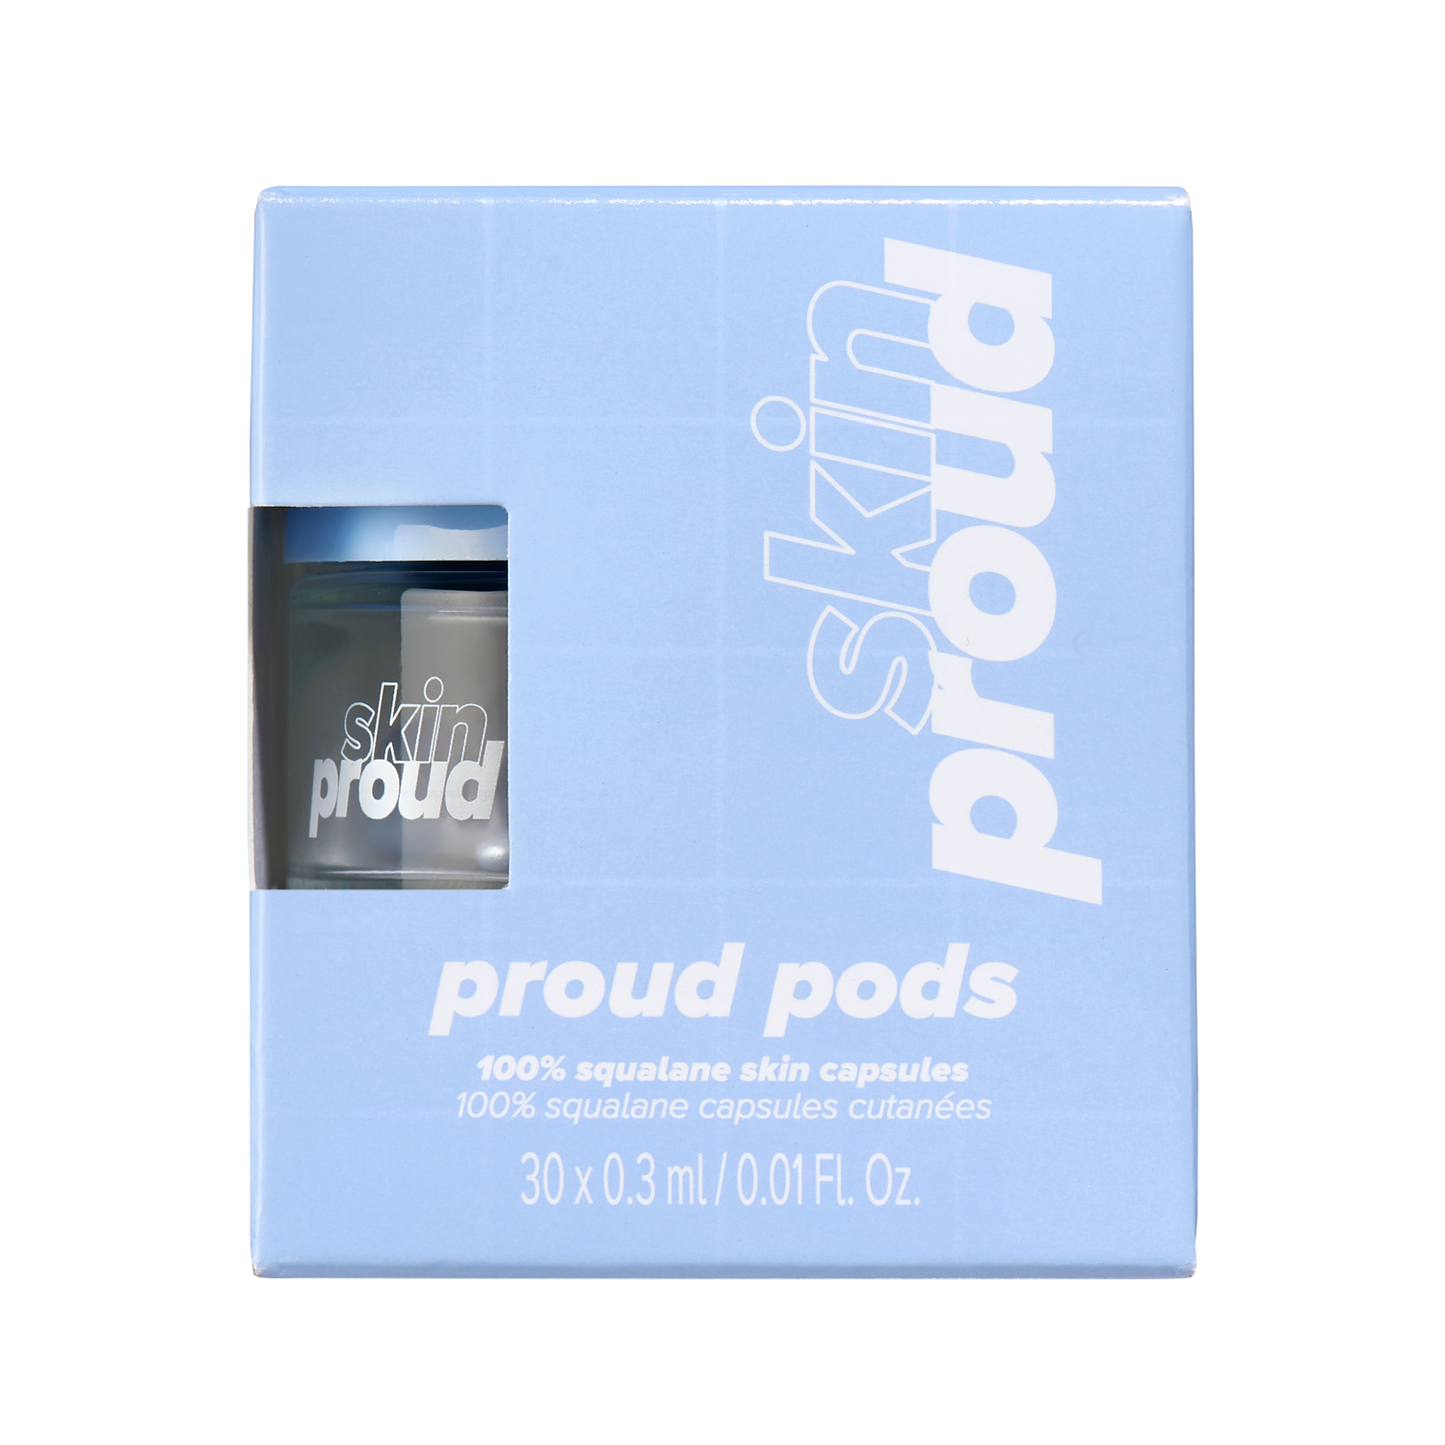 SKINPROUD proud pods - 100% squalane ampoules